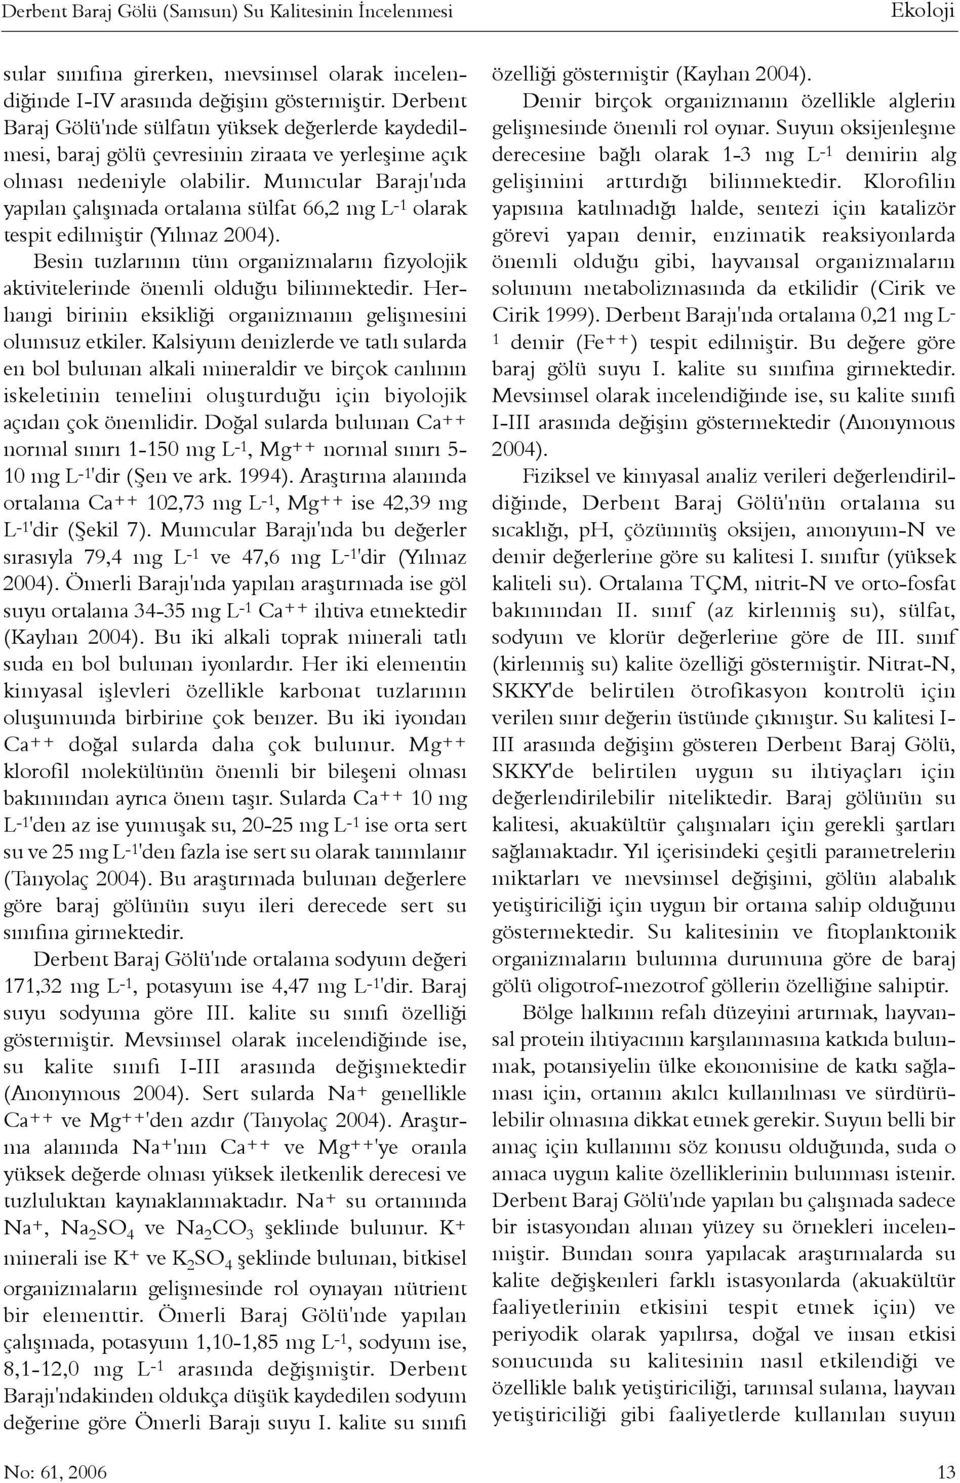 Mumcular Barajý'nda yapýlan çalýþmada ortalama sülfat 66,2 mg L -1 olarak tespit edilmiþtir (Yýlmaz 2004). Besin tuzlarýnýn tüm organizmalarýn fizyolojik aktivitelerinde önemli olduðu bilinmektedir.